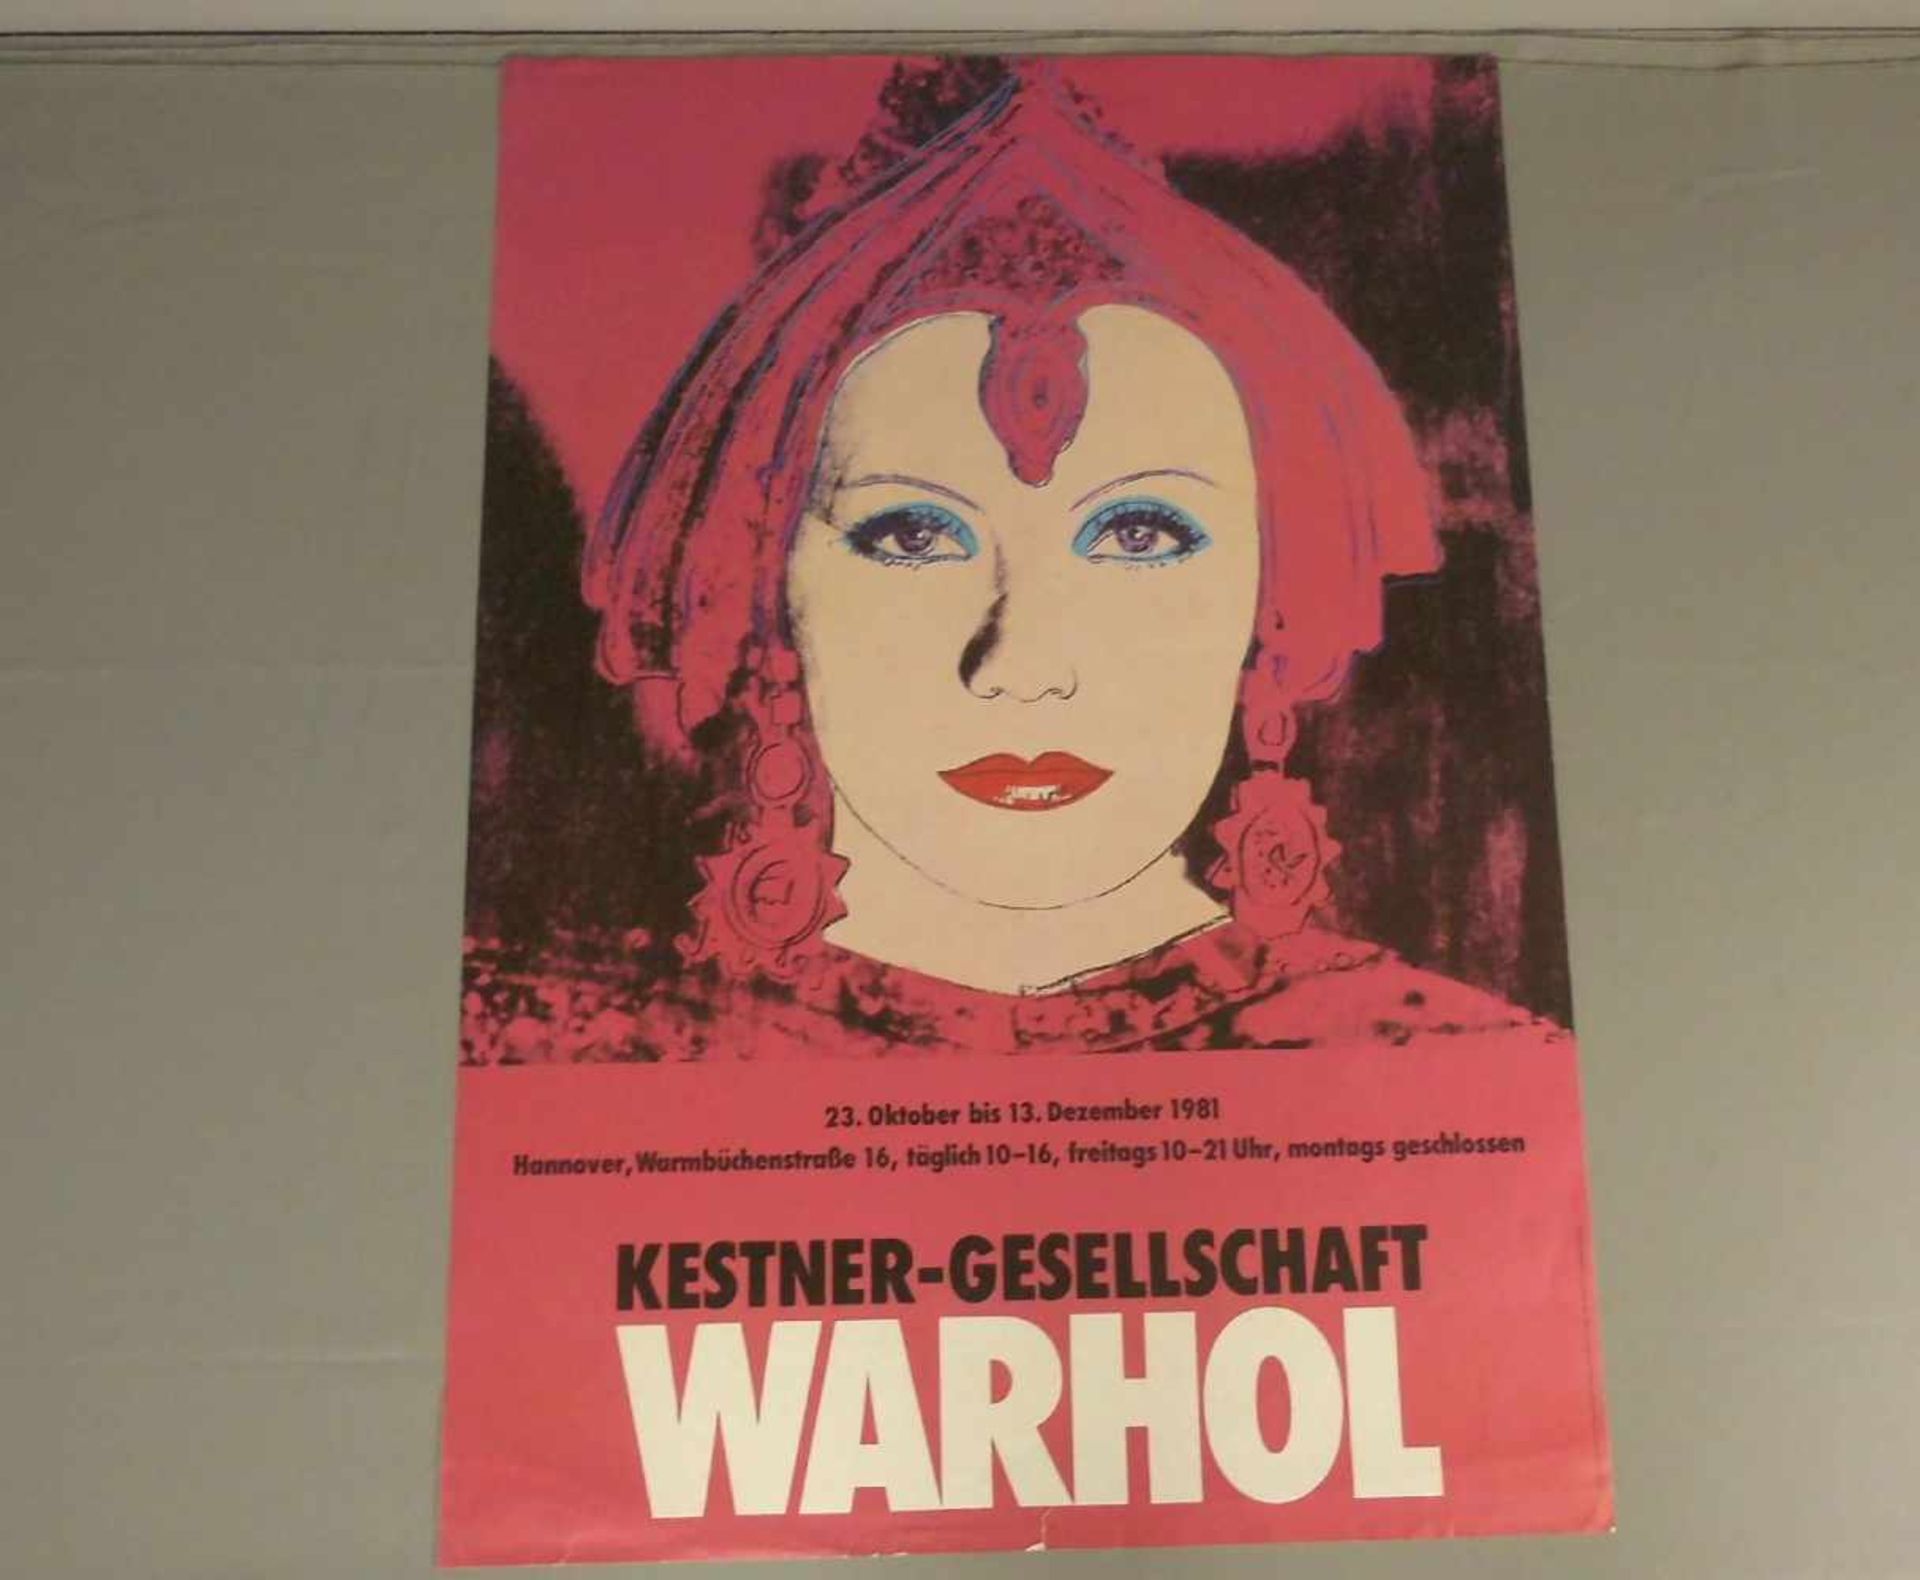 WARHOL, ANDY (1928-1987), Plakat „Greta Garbo“, 1981. Plakat zur Ausstellung „Warhol“ in der